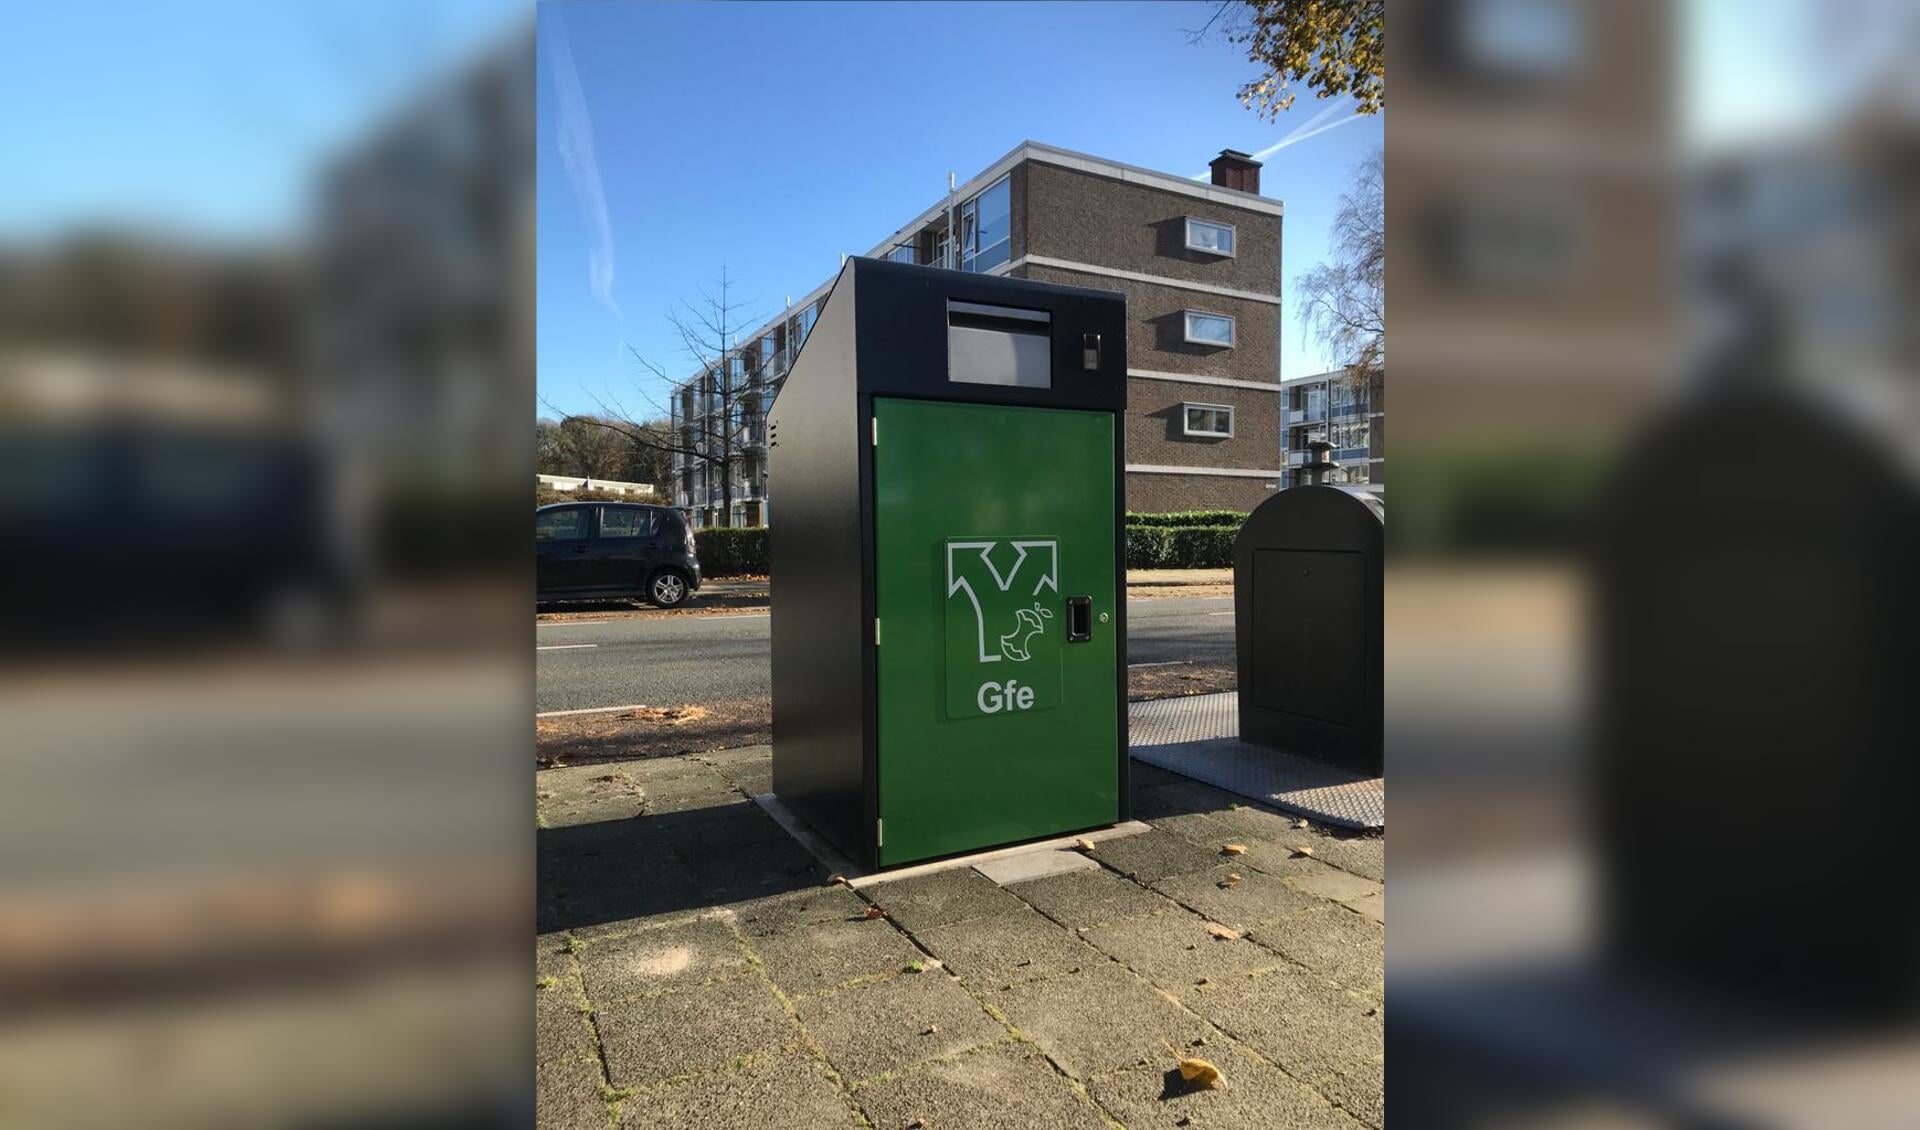 Gemeente Harderwijk heeft vier nieuwe plekken aangewezen om extra GFT-verzamelcontainers te plaatsen.